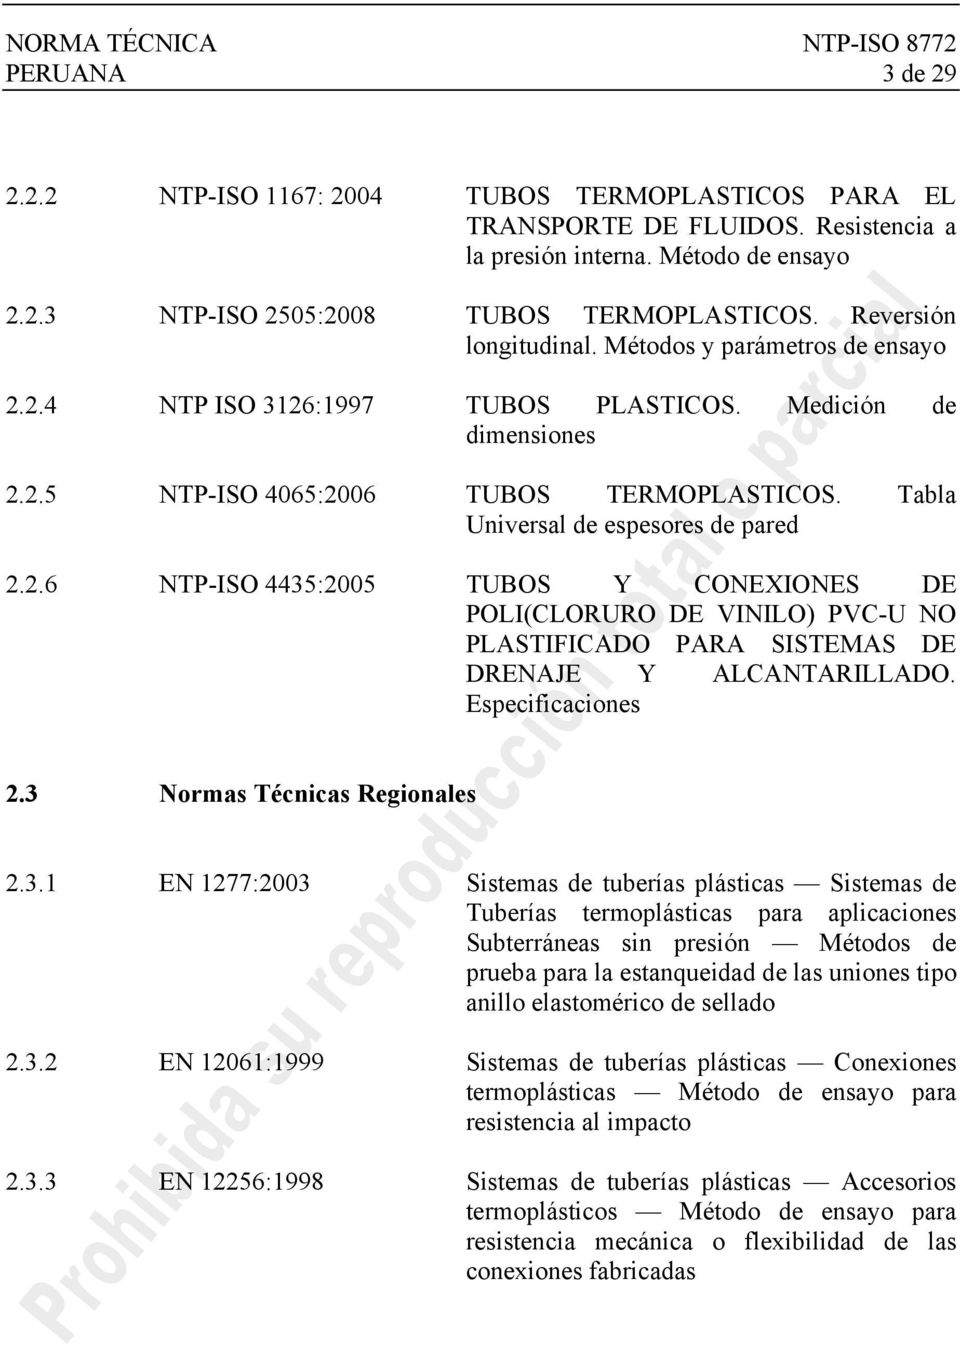 Tabla Universal de espesores de pared 2.2.6 NTP-ISO 4435:2005 TUBOS Y CONEXIONES DE POLI(CLORURO DE VINILO) PVC-U NO PLASTIFICADO PARA SISTEMAS DE DRENAJE Y ALCANTARILLADO. Especificaciones 2.